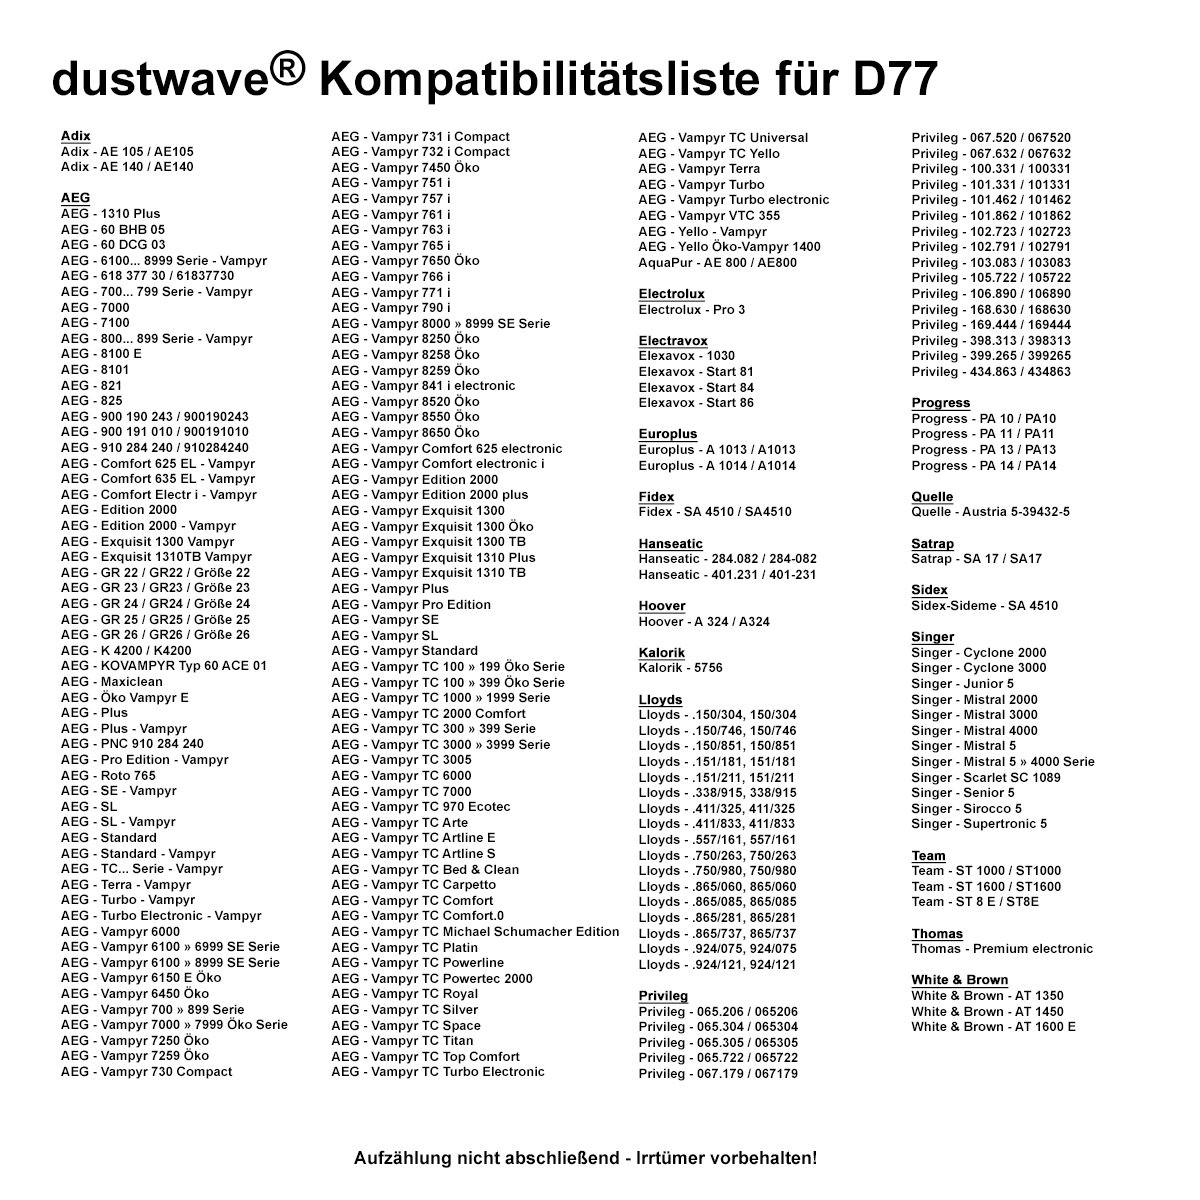 Dustwave® 20 Staubsaugerbeutel für AEG Vampyr 767 i Electronic - hocheffizient, mehrlagiges Mikrovlies mit Hygieneverschluss - Made in Germany